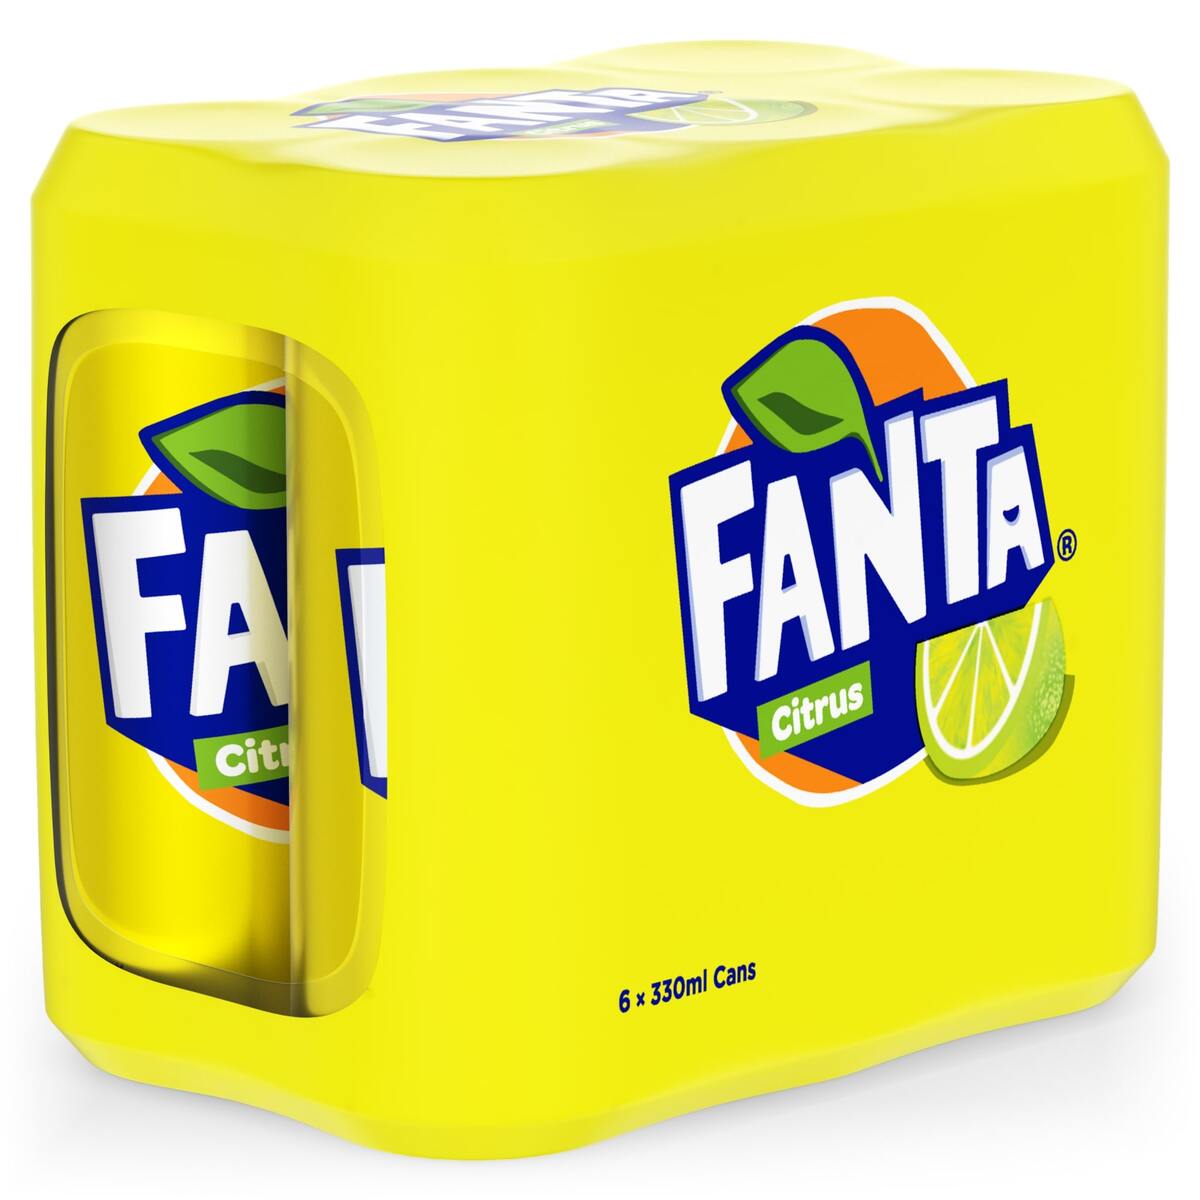 Fanta Citrus 330 ml